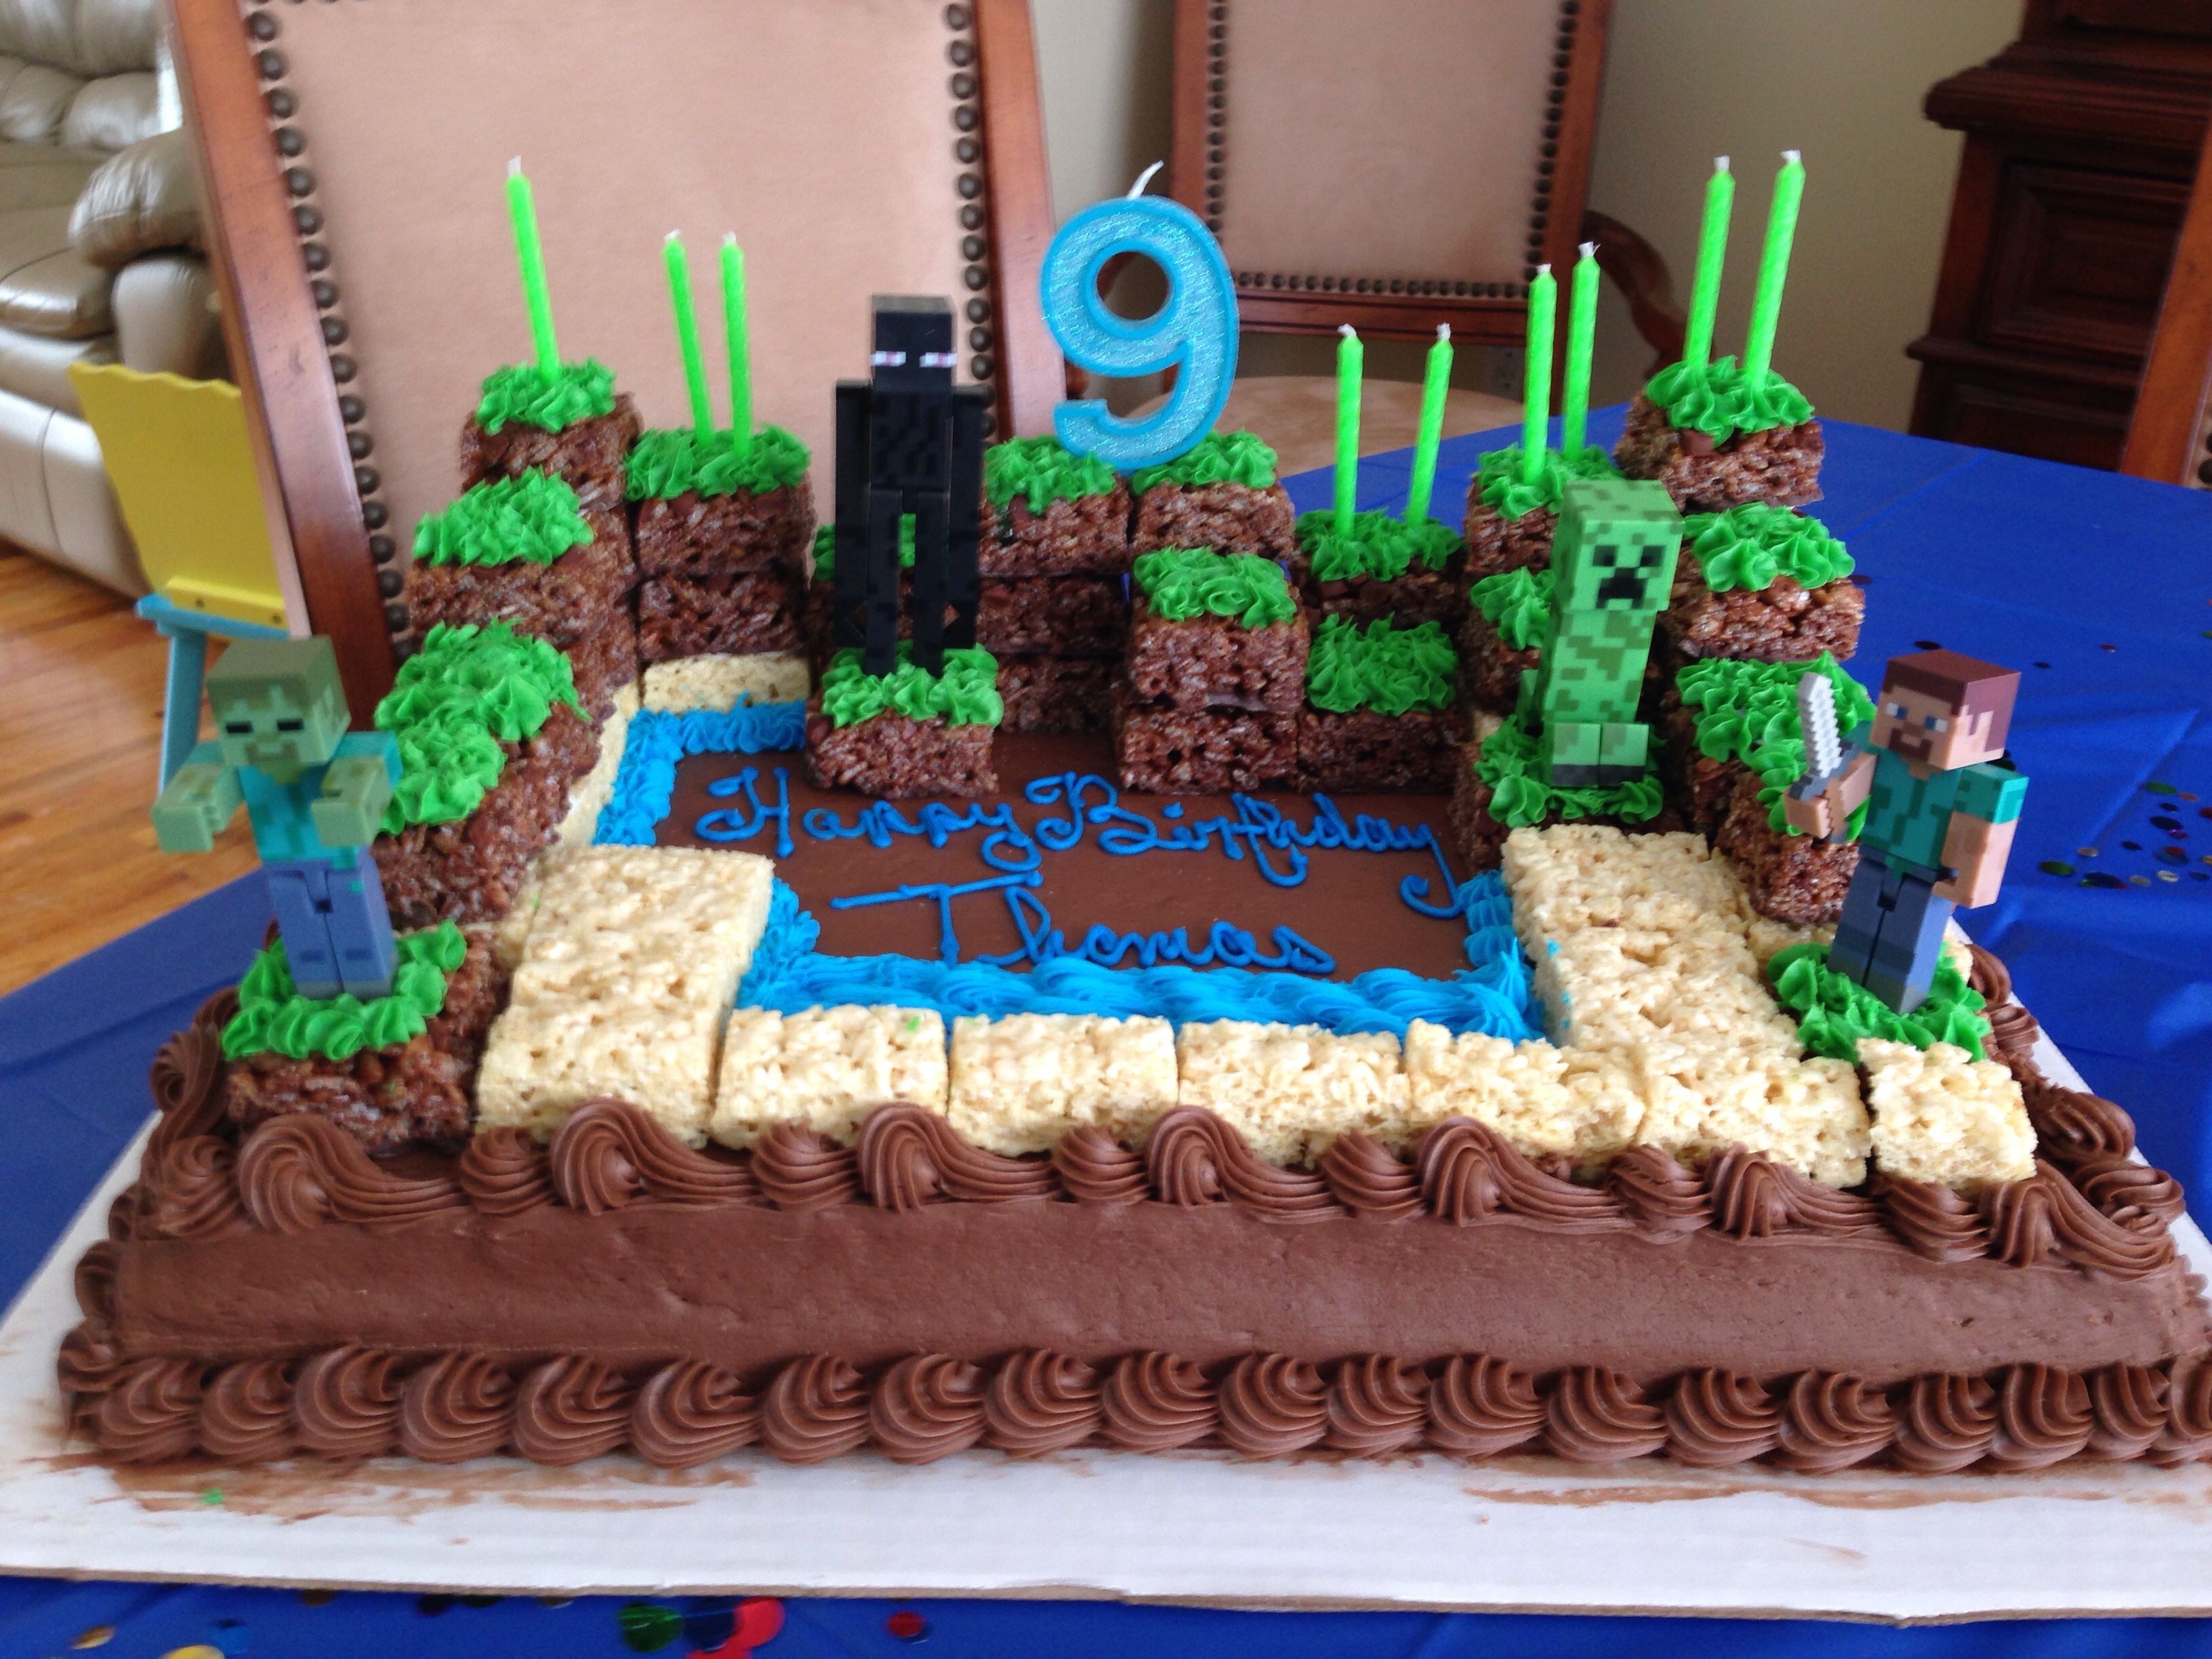 Фото торта на день рождения мальчику 9 лет